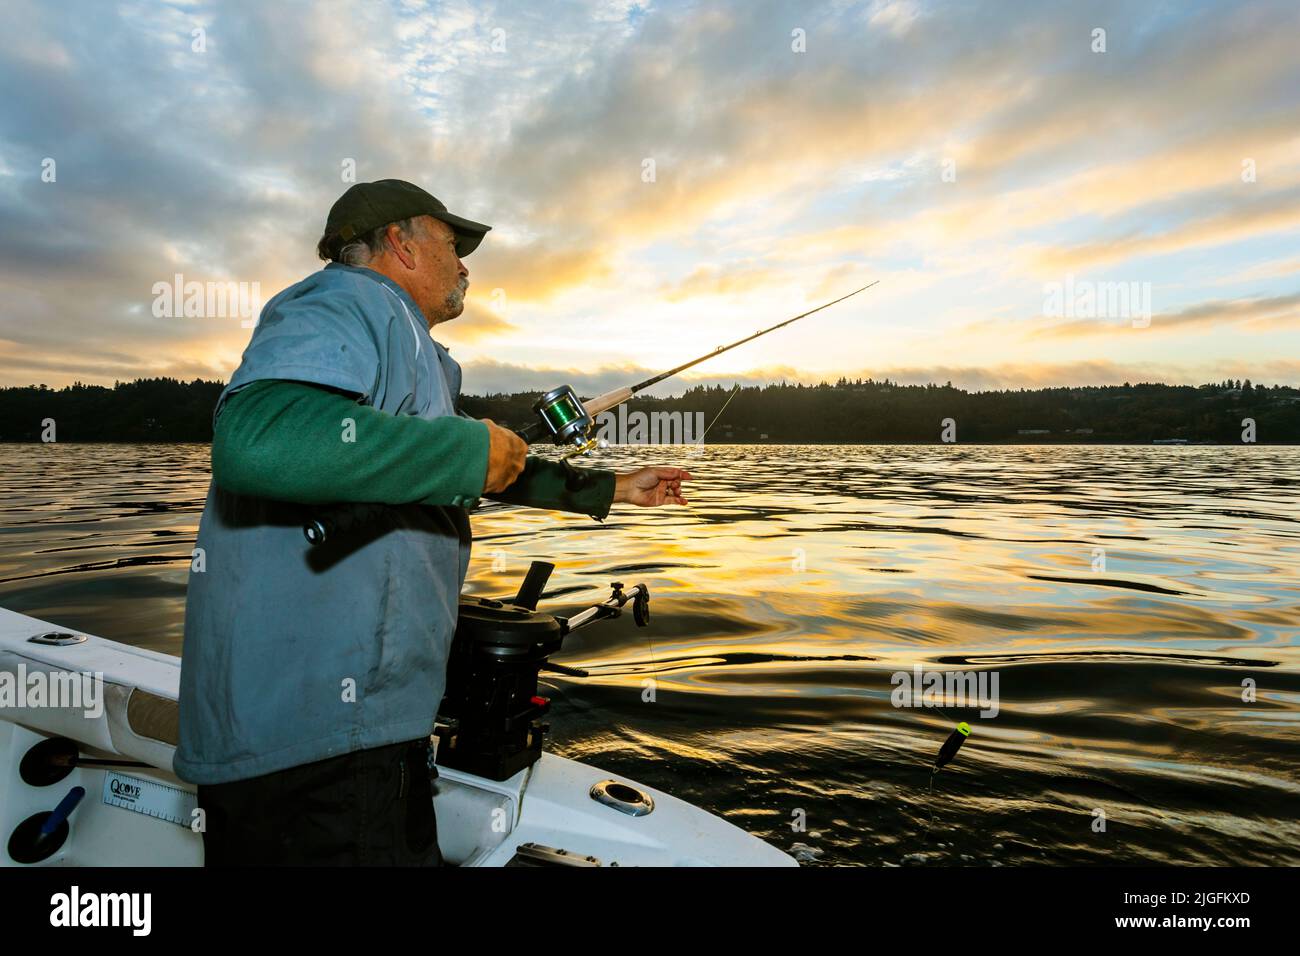 WA20626-00....WASHINGTON - Phil Russell fija una caña de pescar mientras que trolling para el salmón en el sonido de Puget. MR R8 Foto de stock